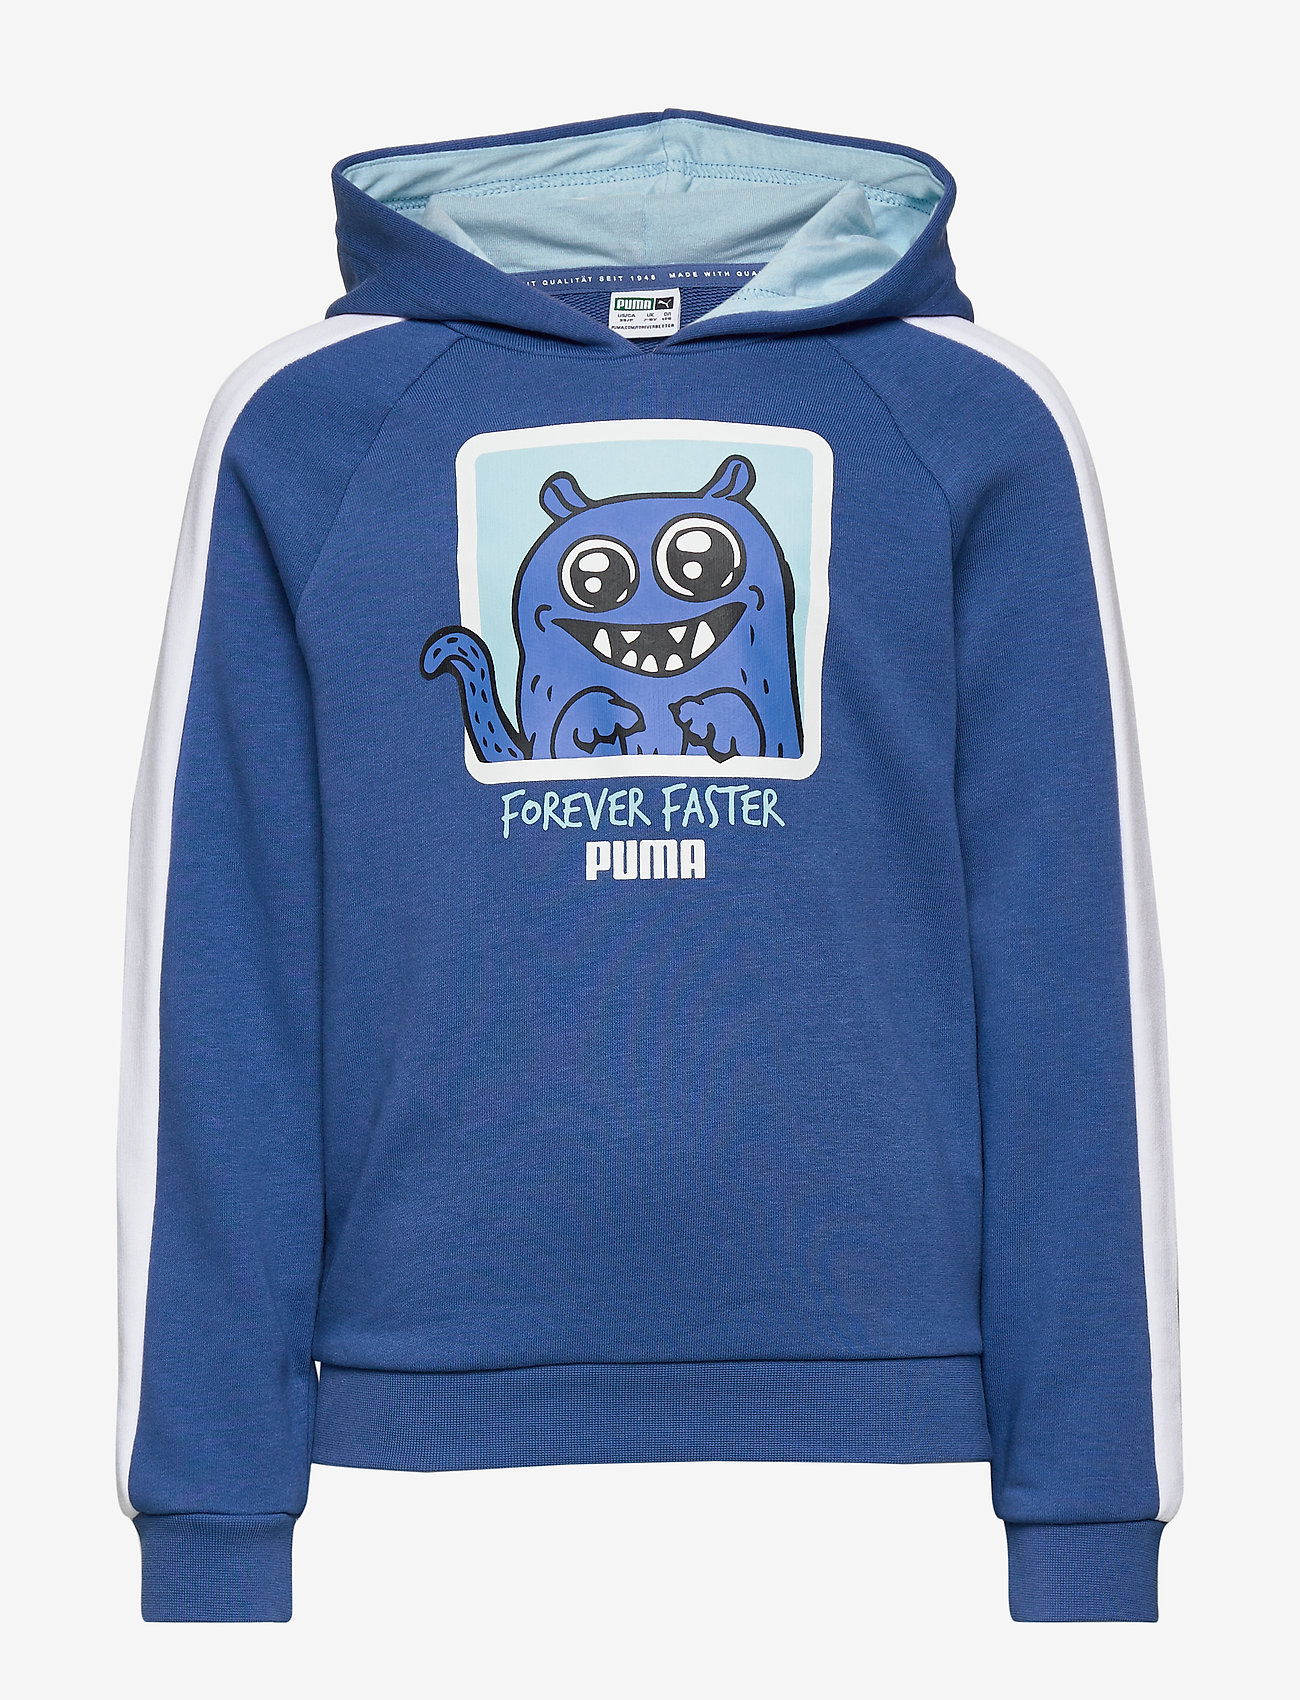 light blue puma sweatshirt